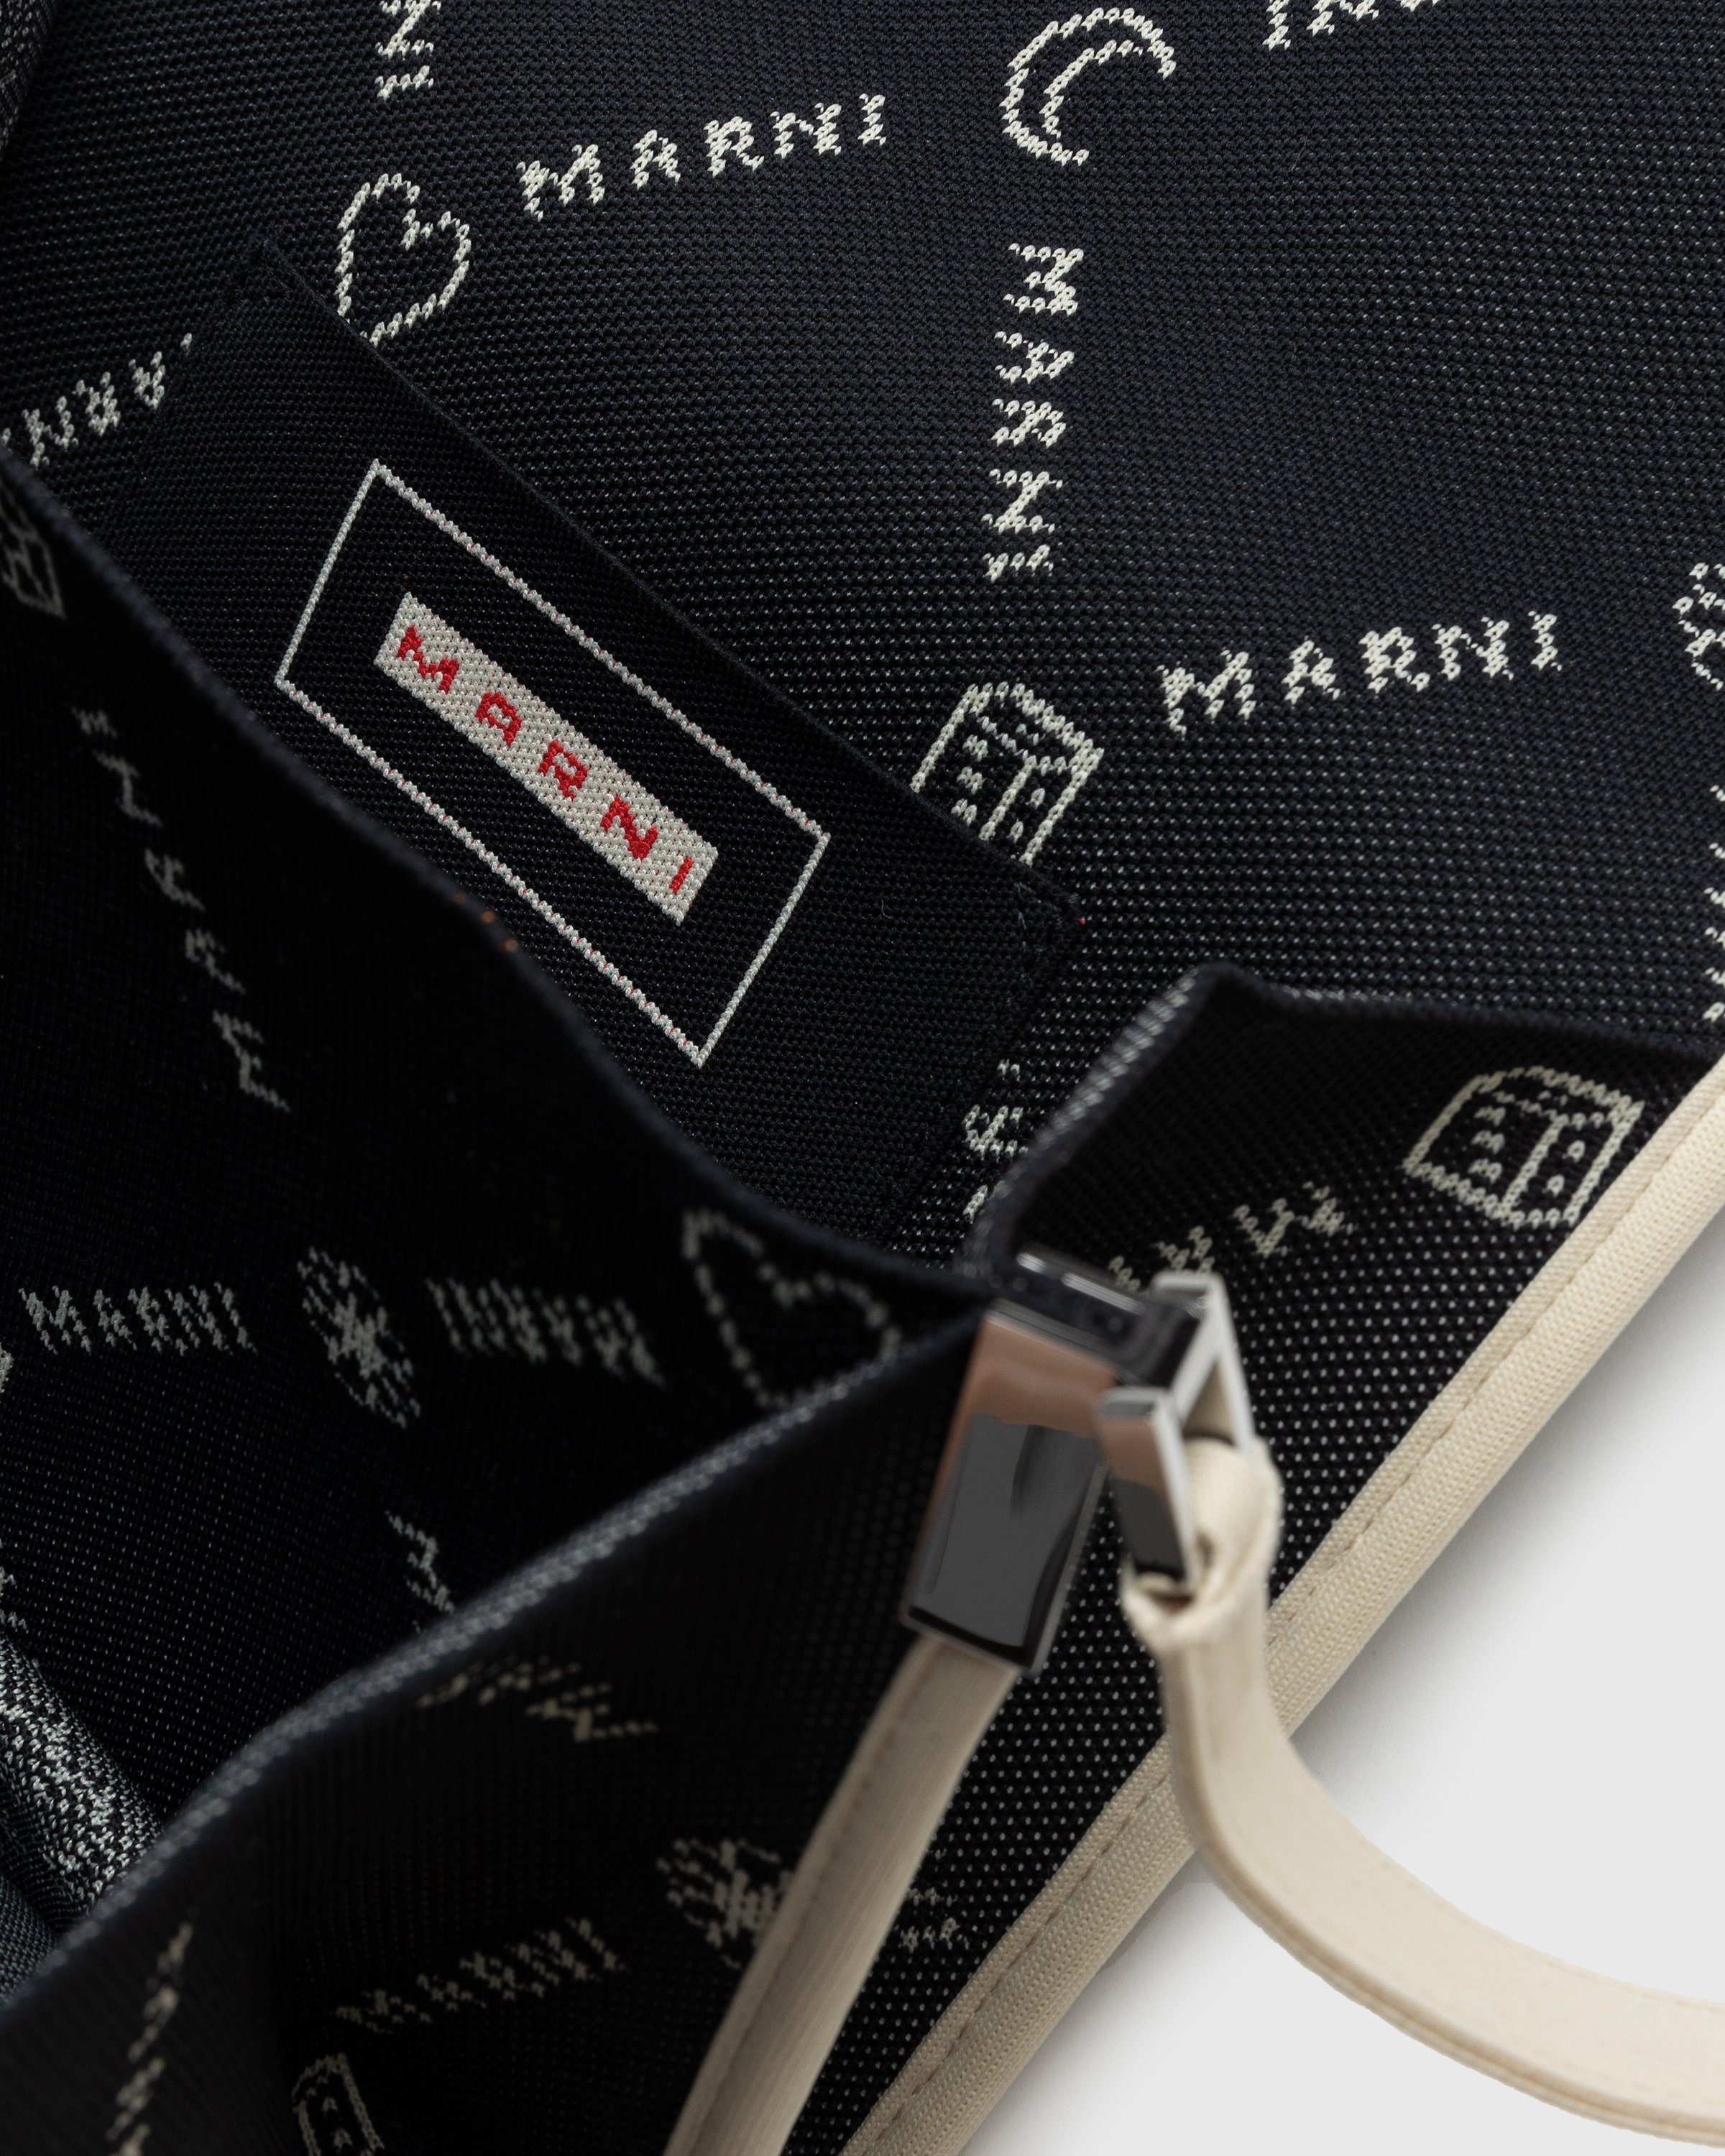 Marni Black Mini Trunk Soft Bag - ShopStyle